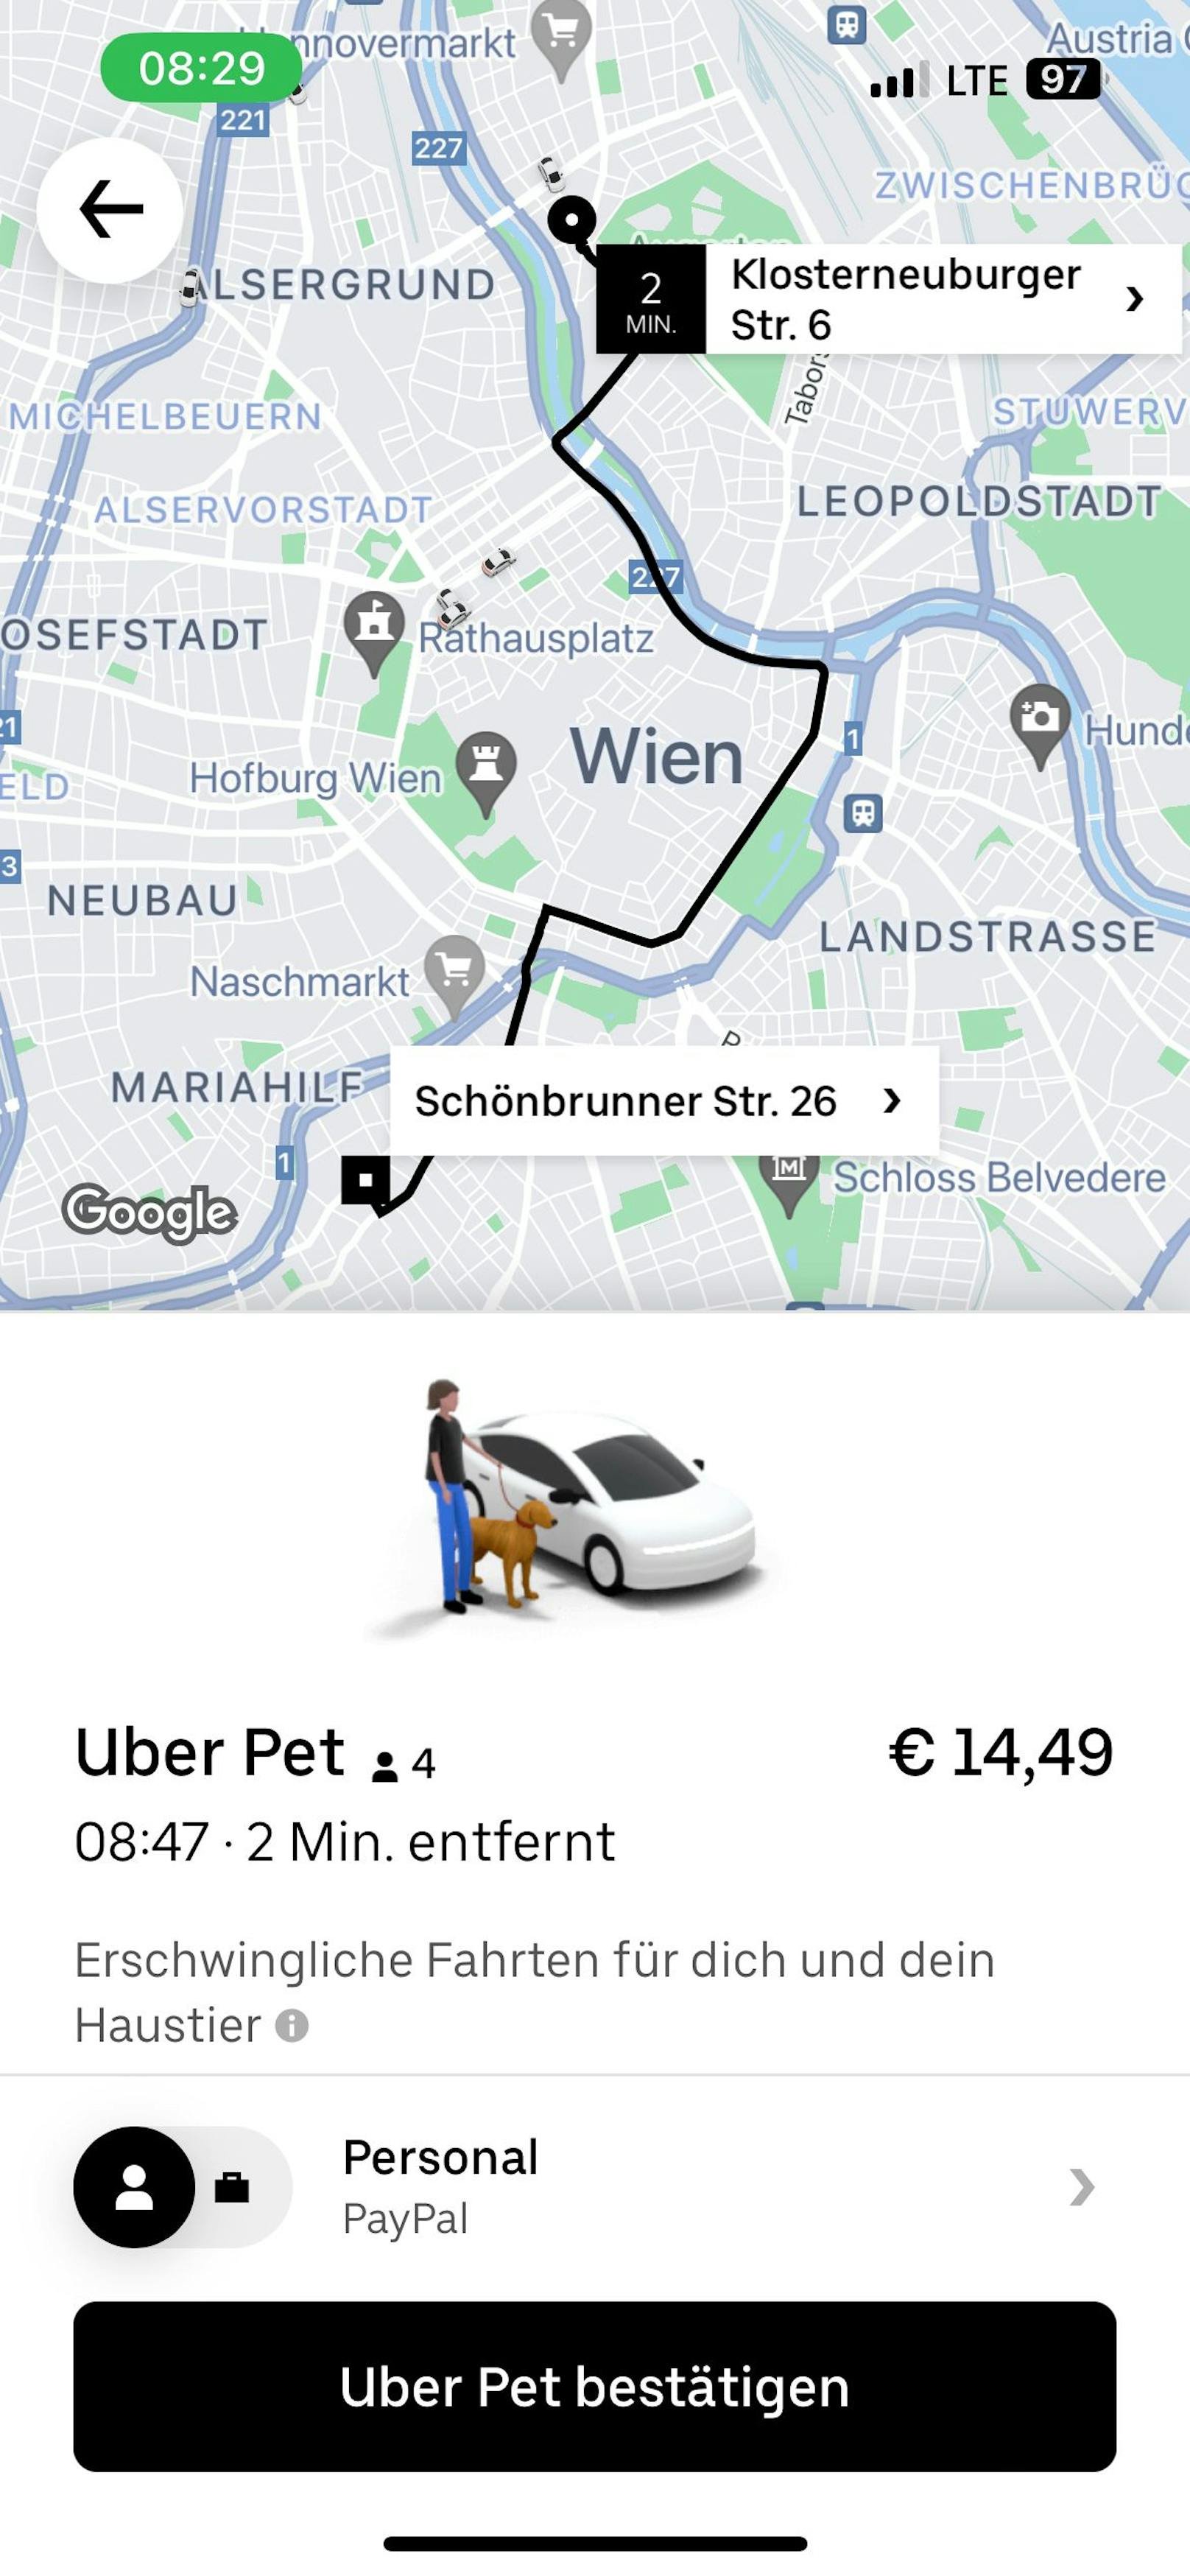 Rechtzeitig zum "Liebe dein Haustier-Tag": Uber Pet startet am 20. Februar in Wien.